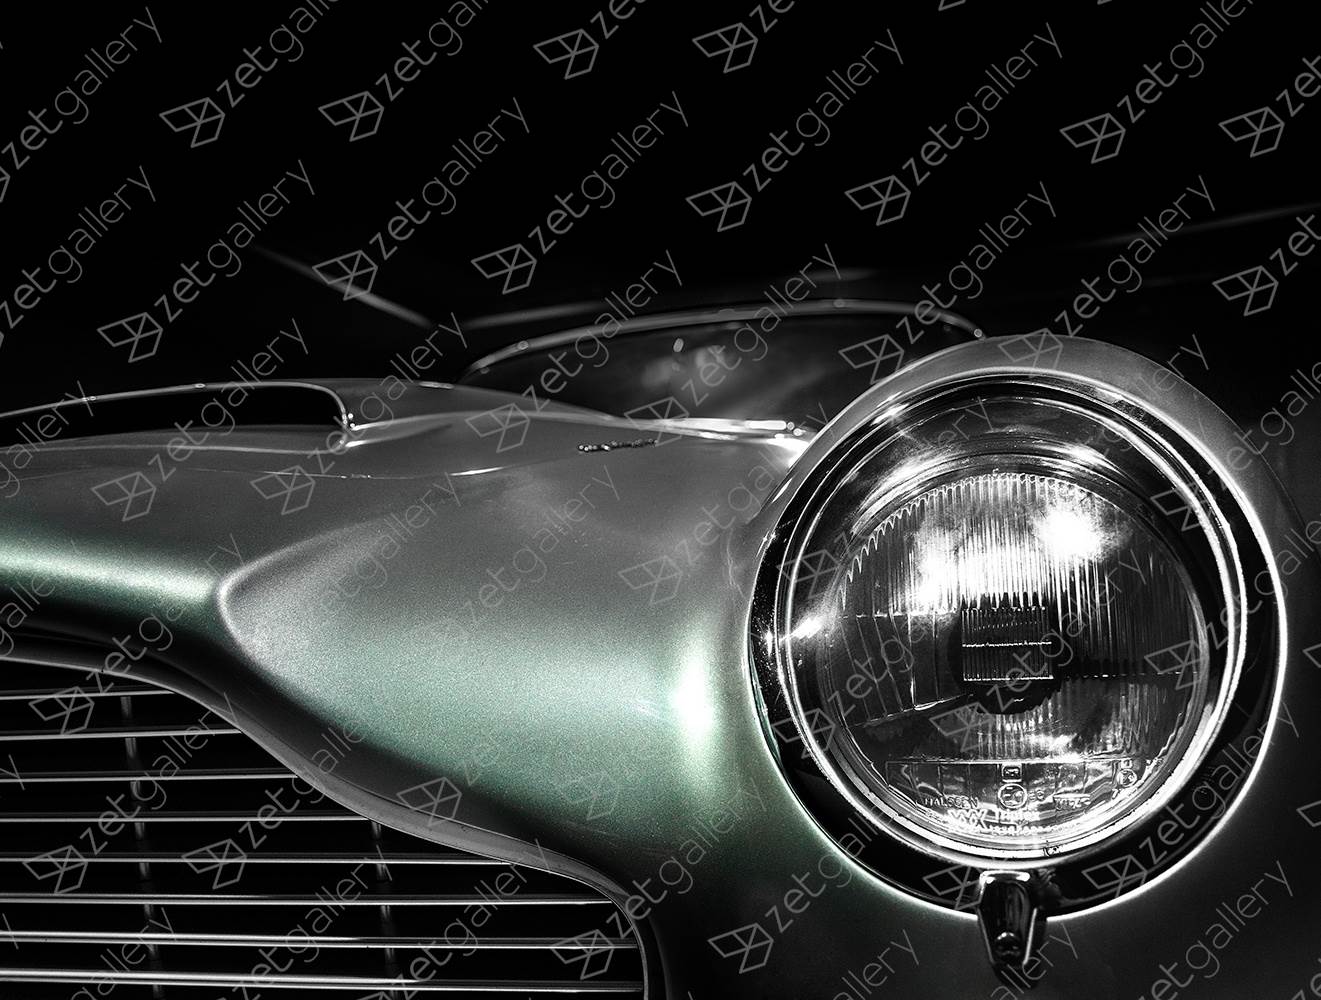 Aston Martin DB6 01, original Avant-garde Numérique La photographie par Yggdrasil Art